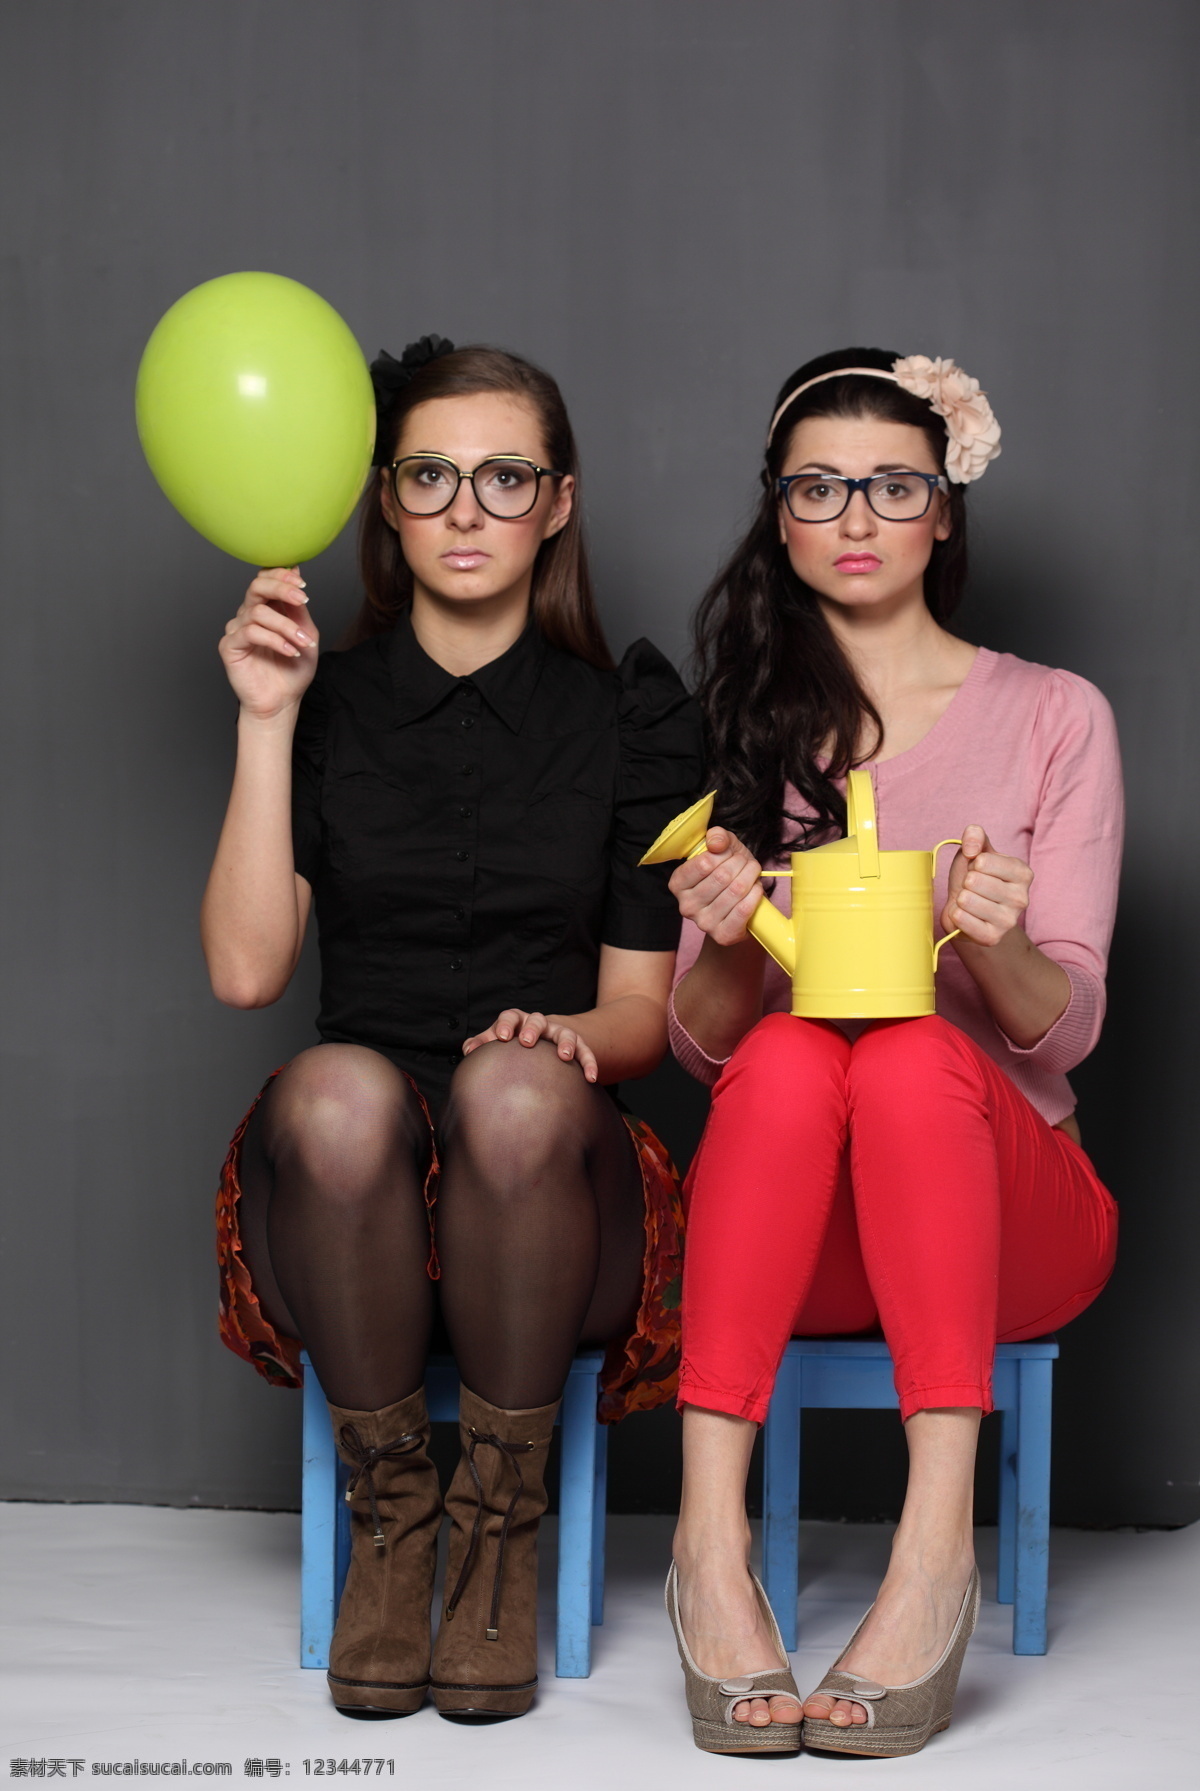 坐在 凳子 上 两个 女人 女性朋友 外国女性 时尚美女 女性生活 美女 朋友 休闲美女 坐着 拿着 气球 浇花水壶 美女图片 人物图片